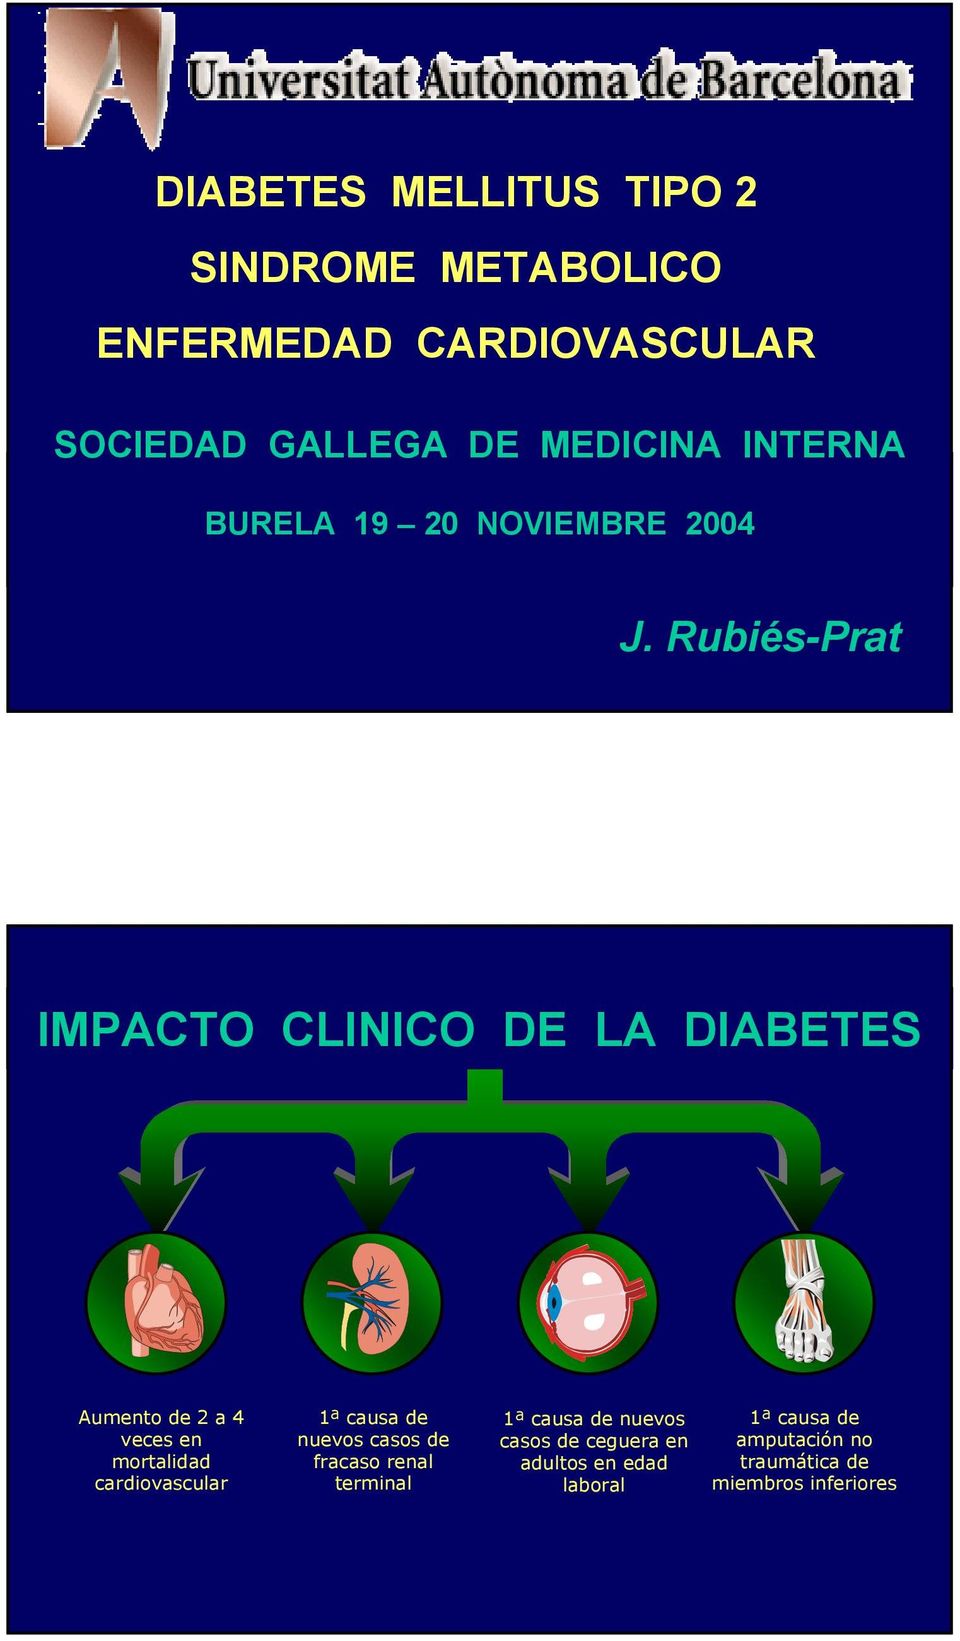 Rubiés-Prat IMPACTO CLINICO DE LA DIABETES Aumento de 2 a 4 veces en mortalidad cardiovascular 1ª